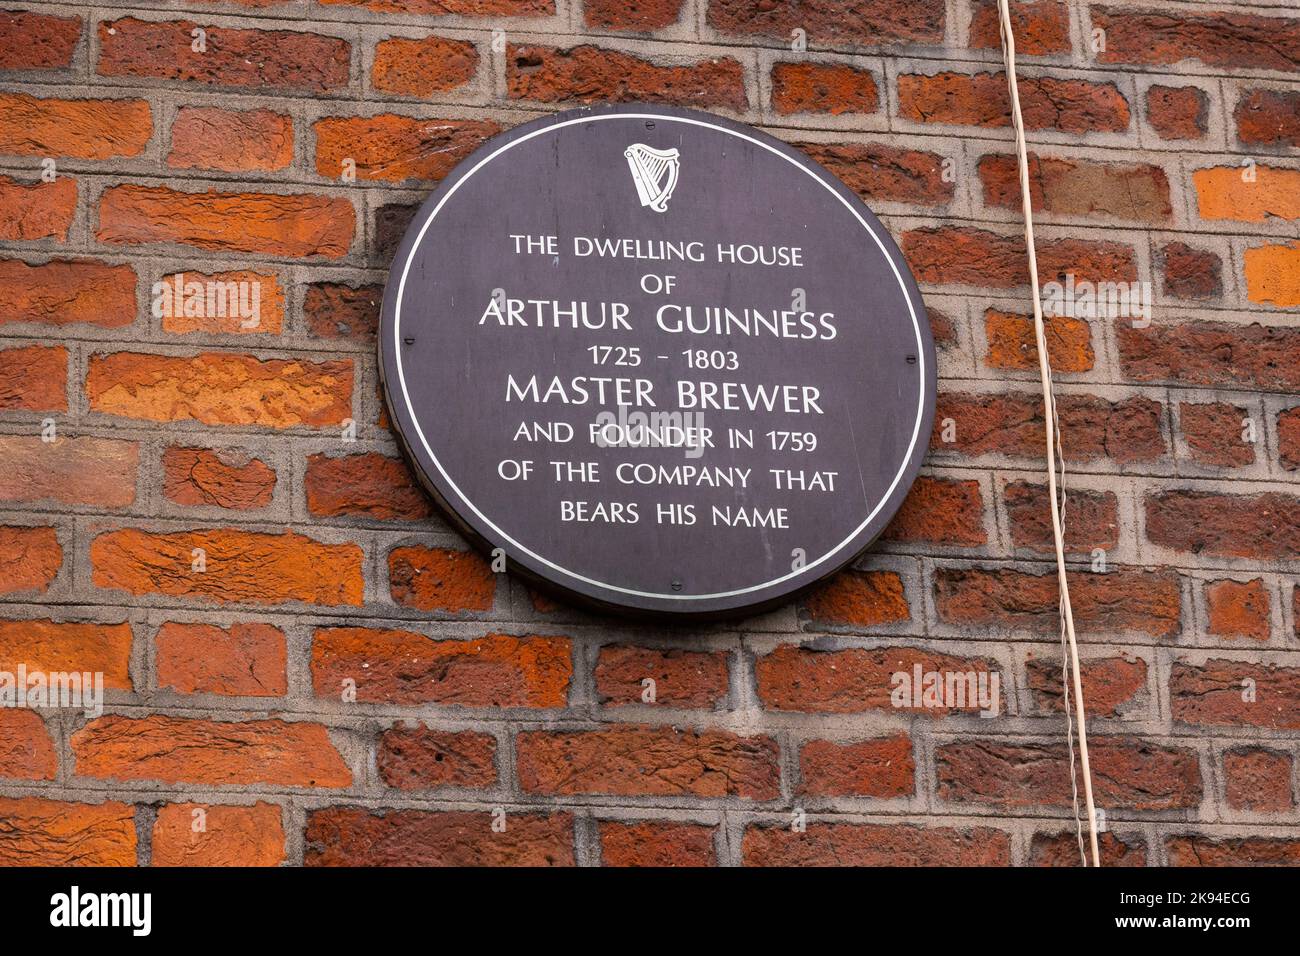 Irlanda Eire Dublino St James's Gate birra stout porter nero ale iniziato 1759 casa targa Arthur Guinness 1725 - 1803 fondatore muro di mattoni Foto Stock